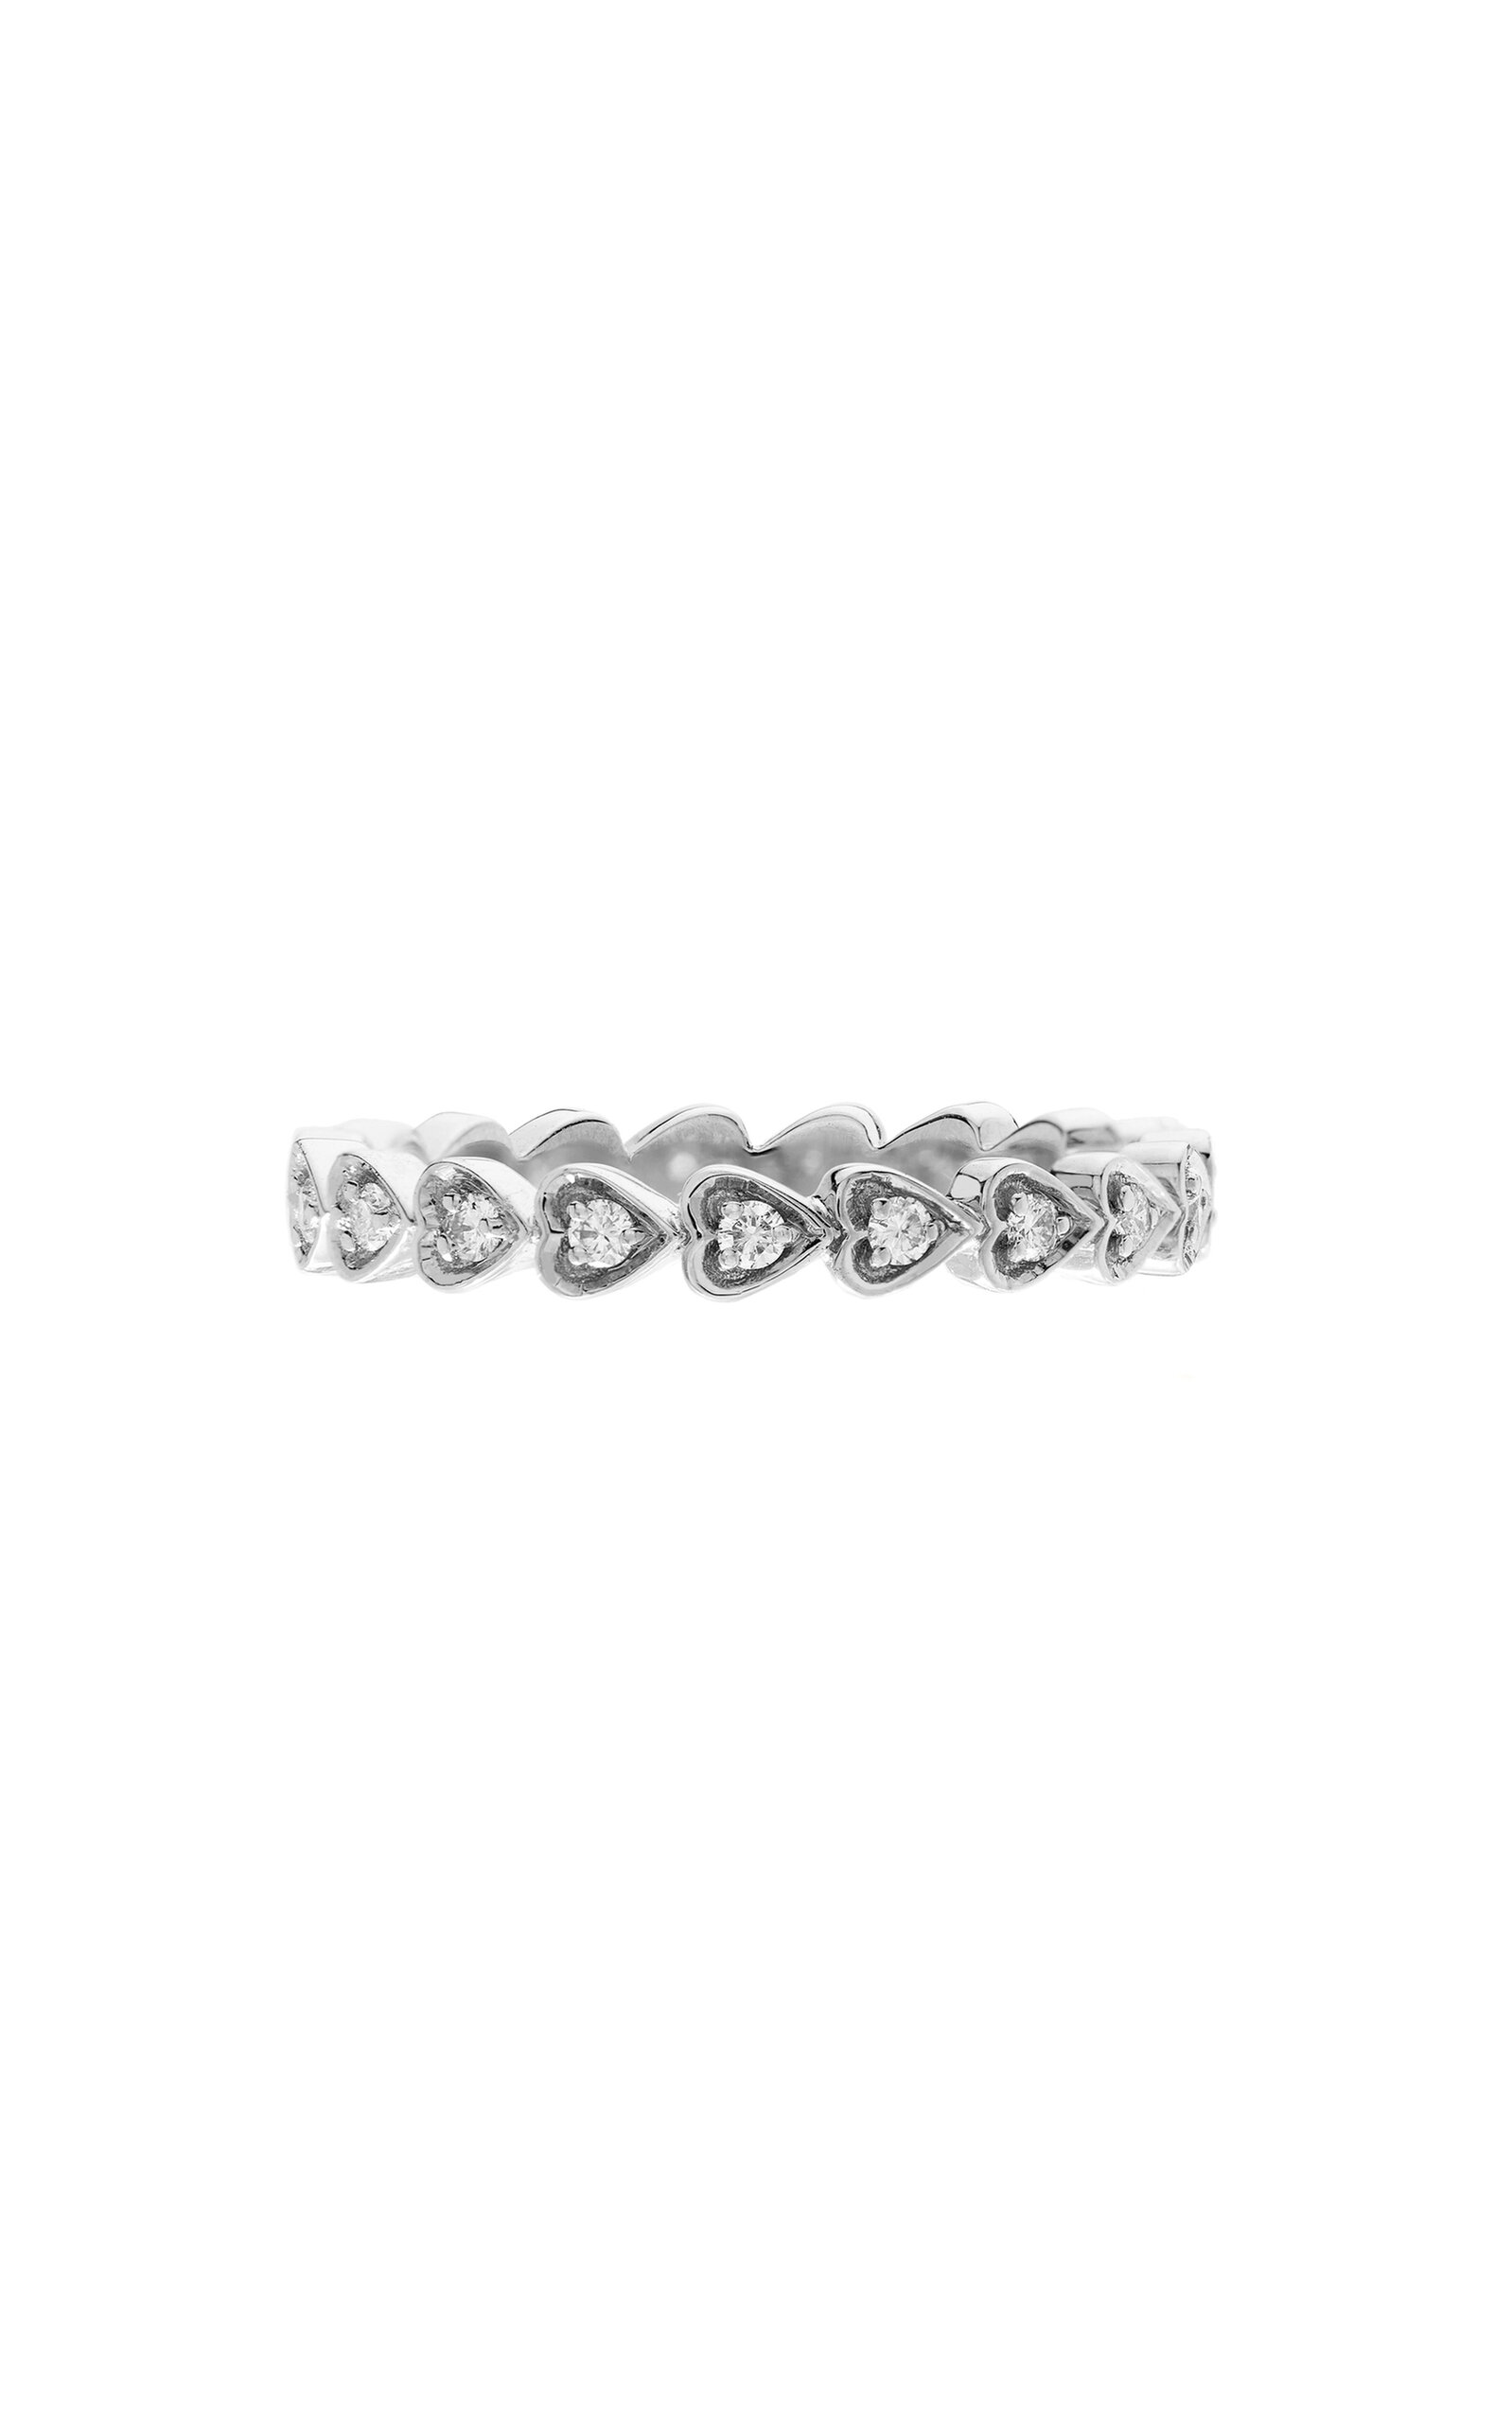 The Amor 18K White Gold Diamond Ring